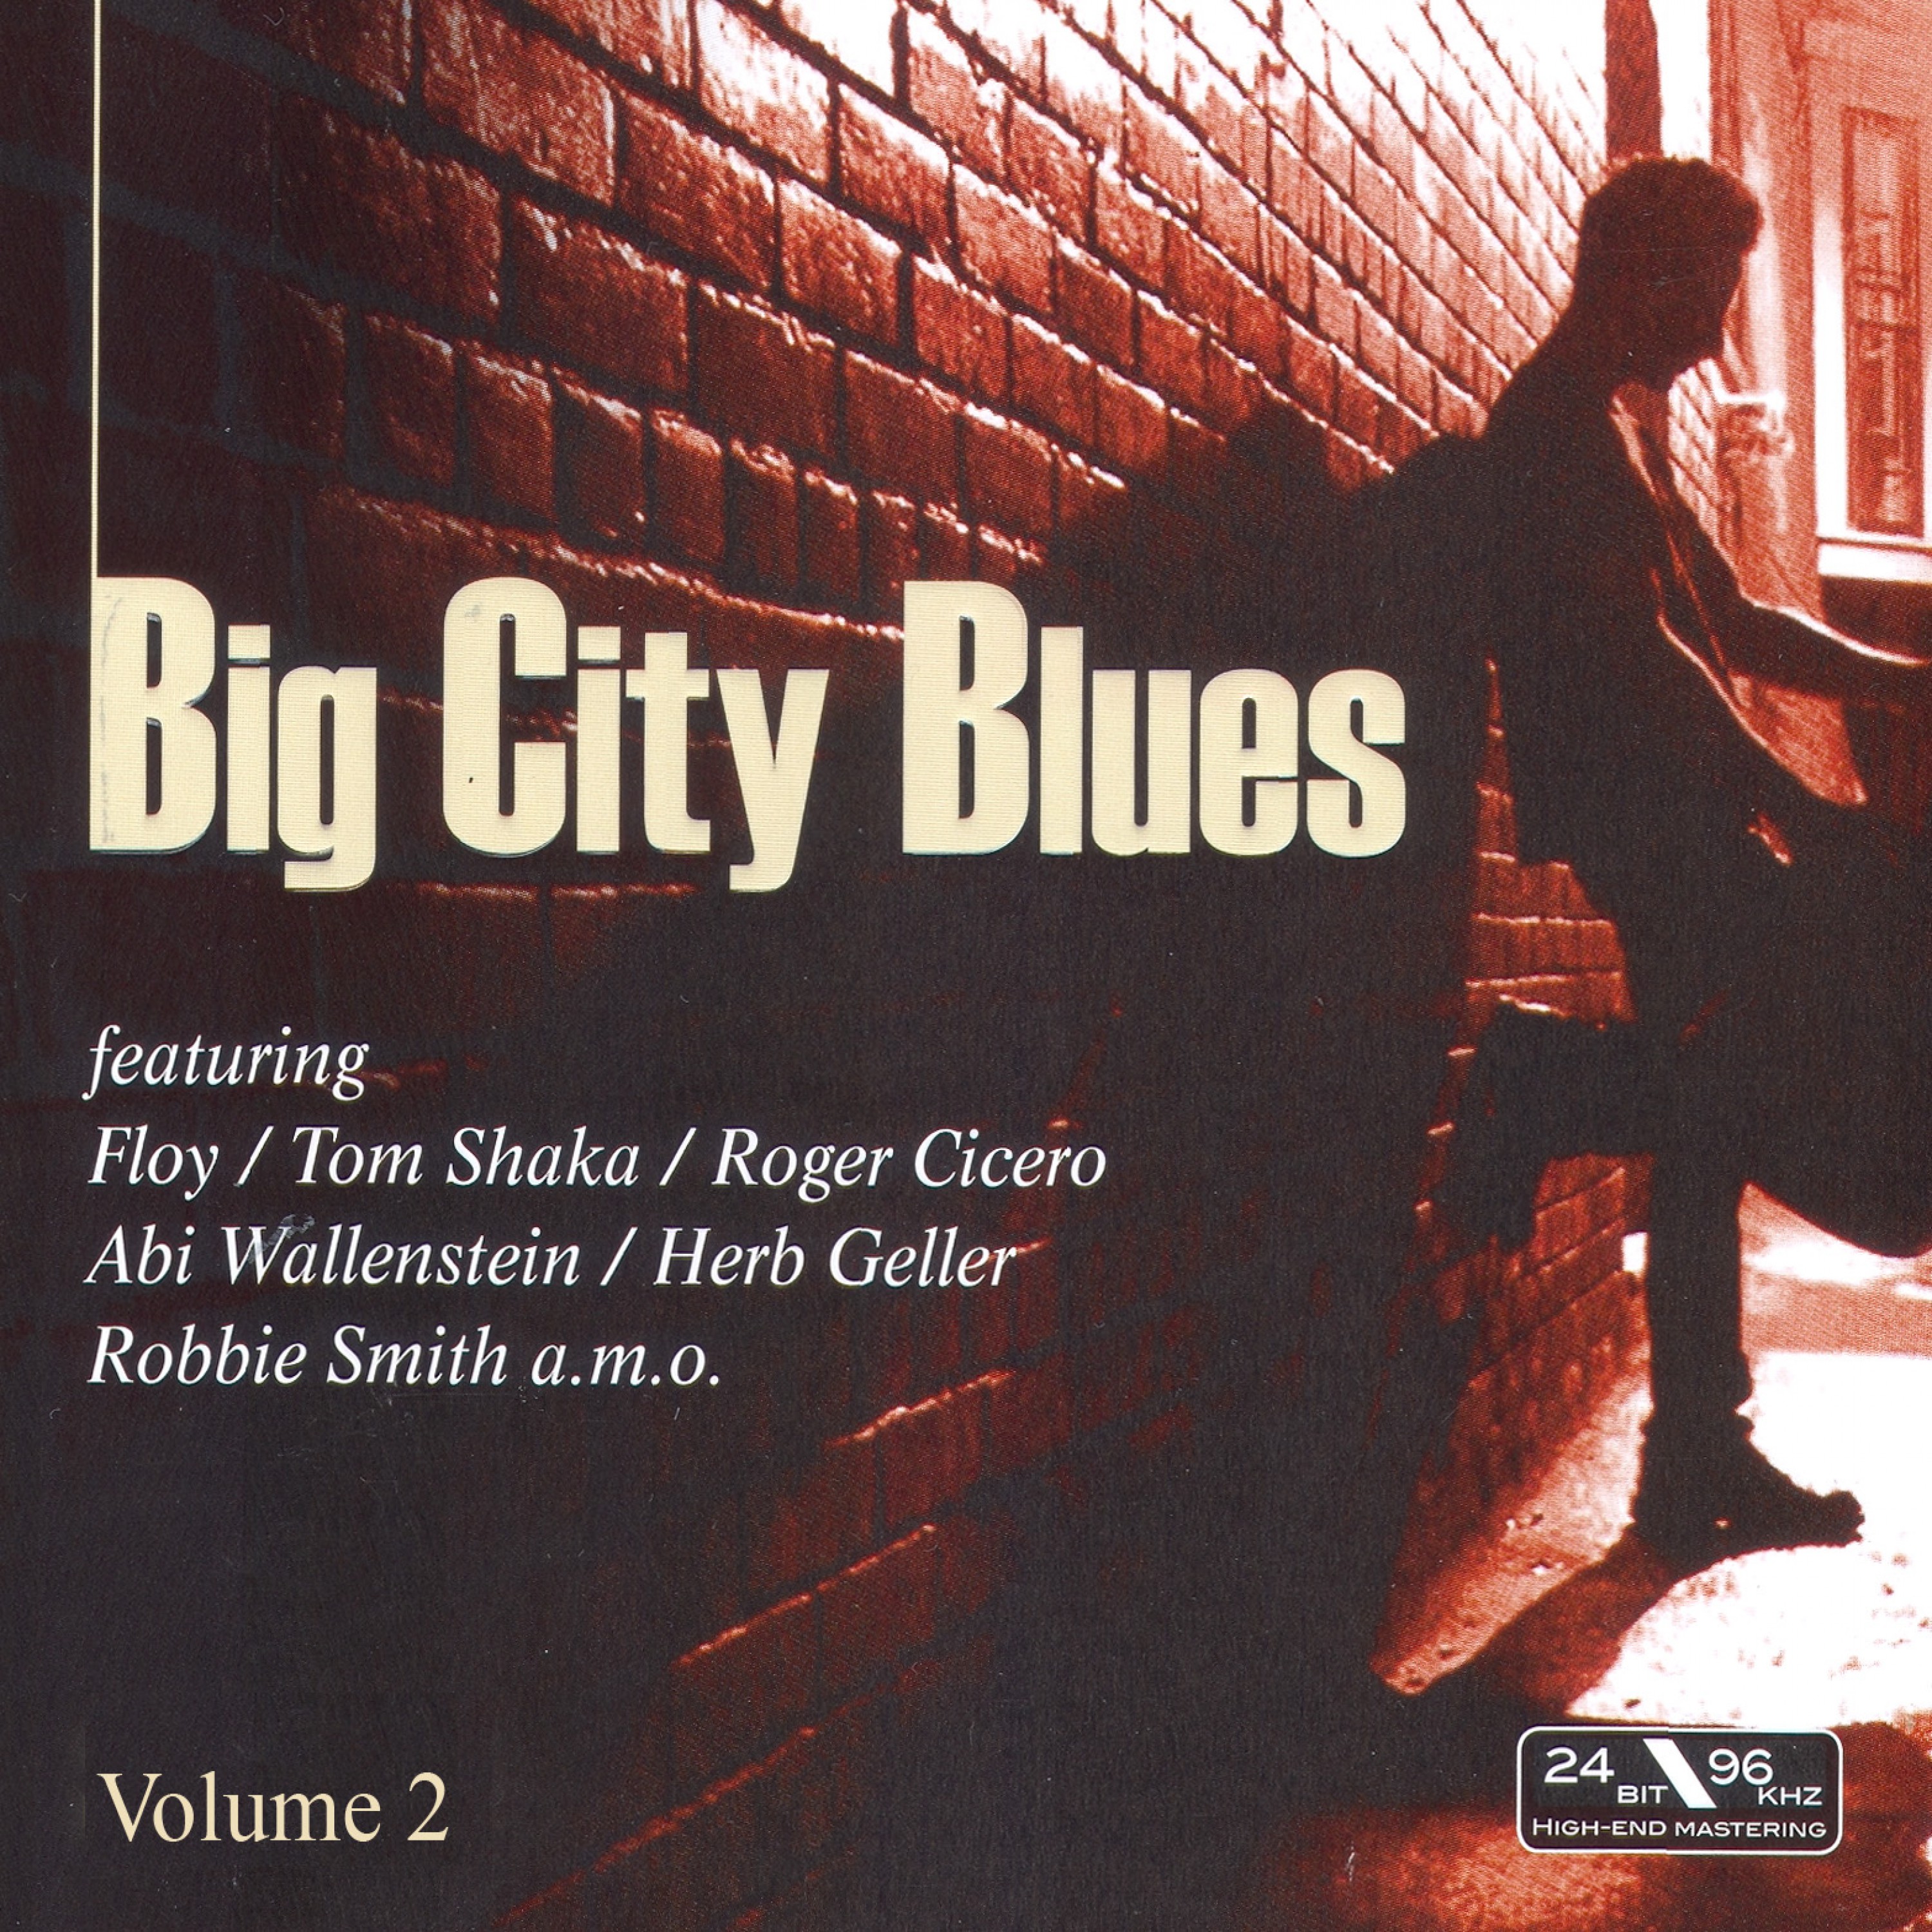 Big City Blues Vol. 2